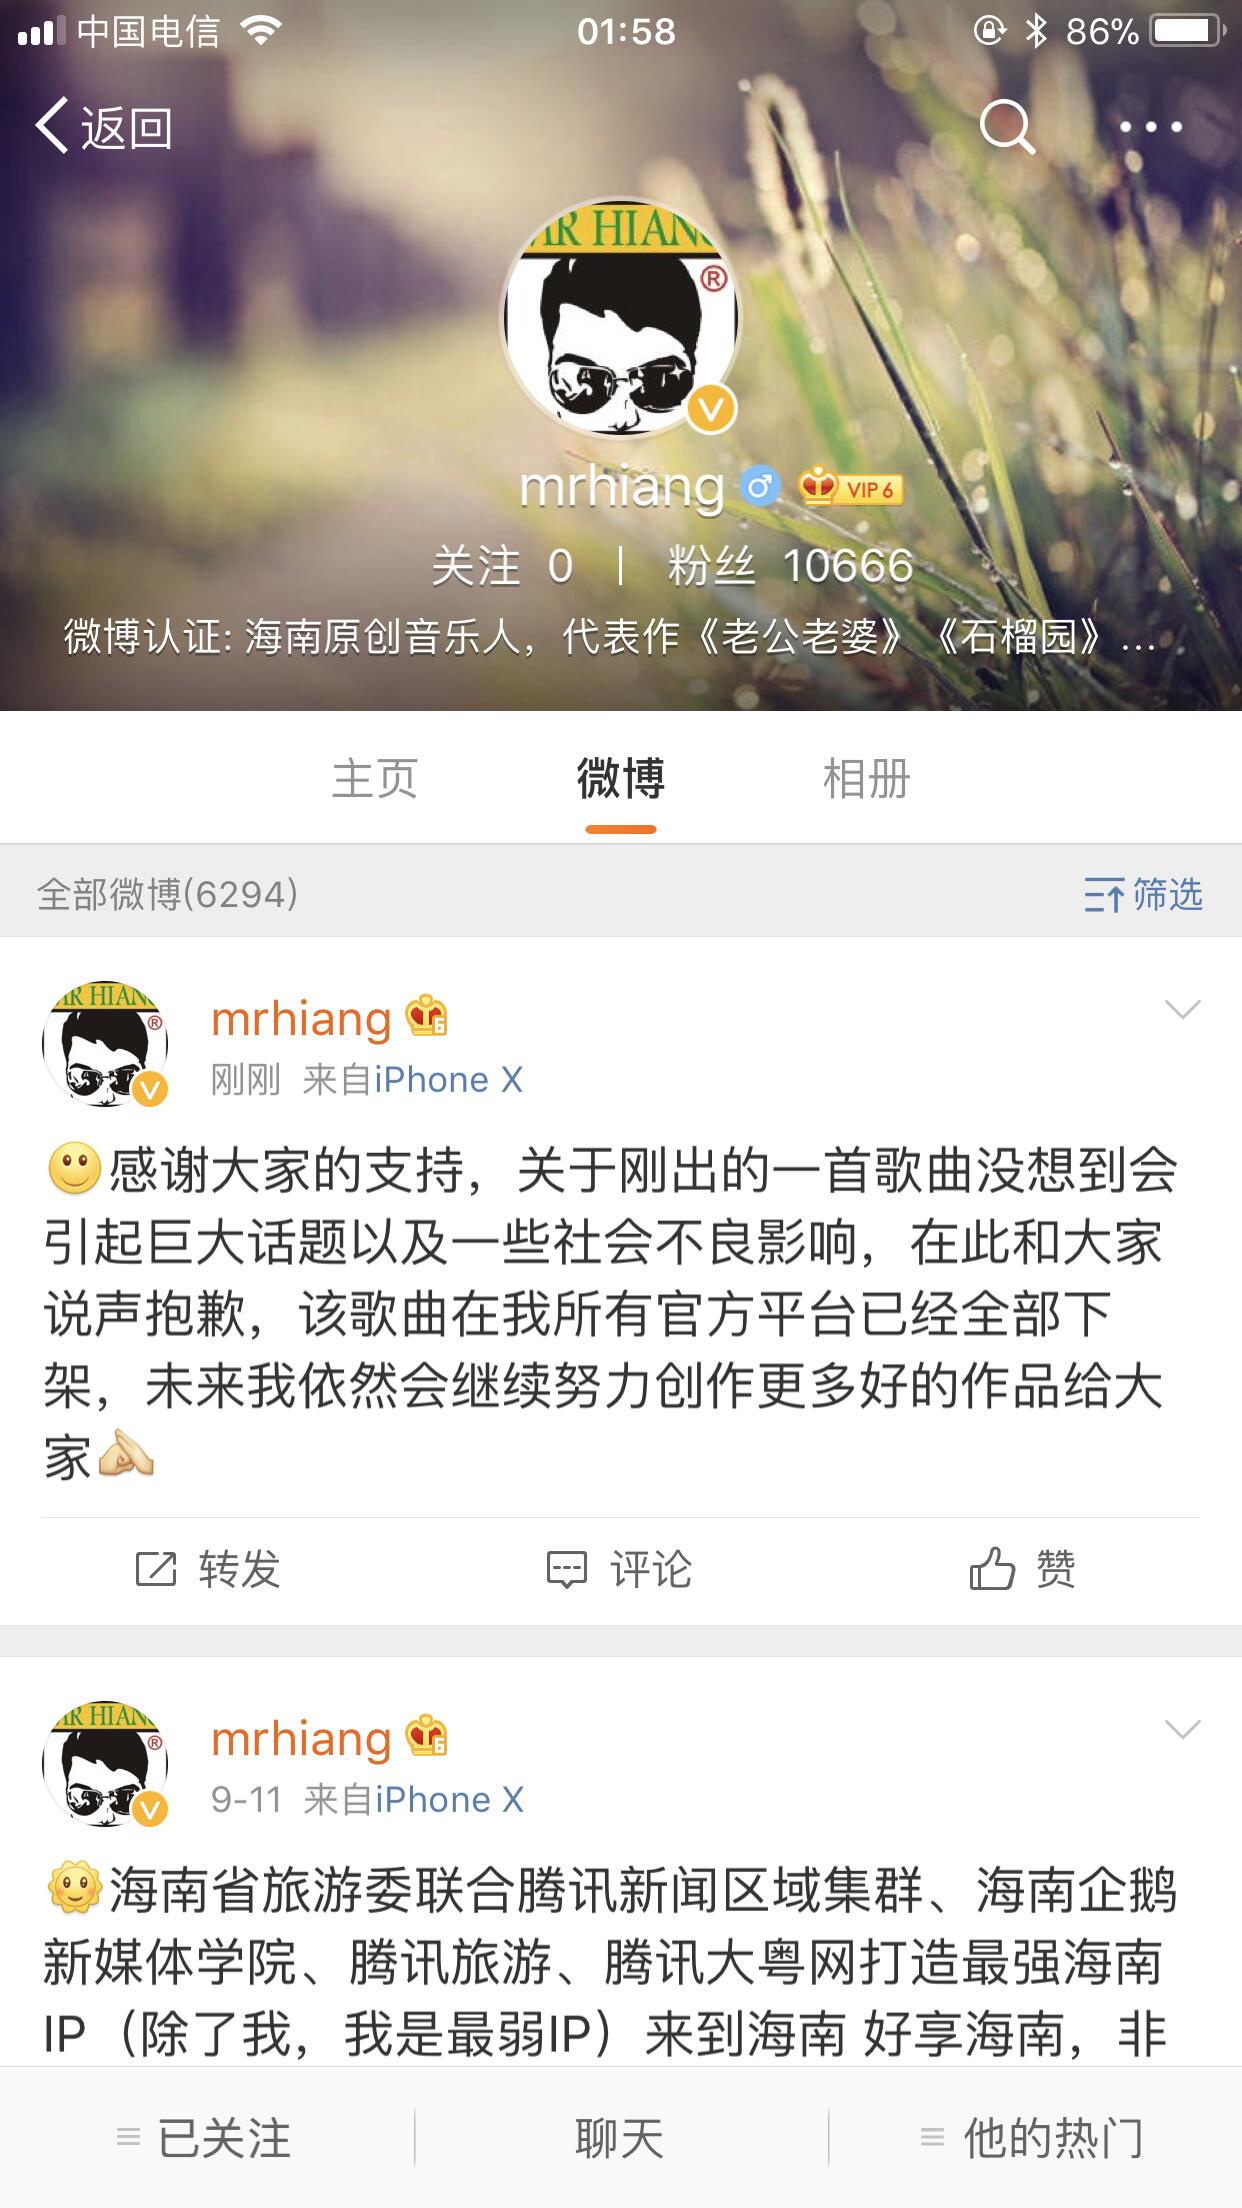 海南歌手唐强因创作低俗网络歌曲《鲁迅买墨汁》发道歉公告